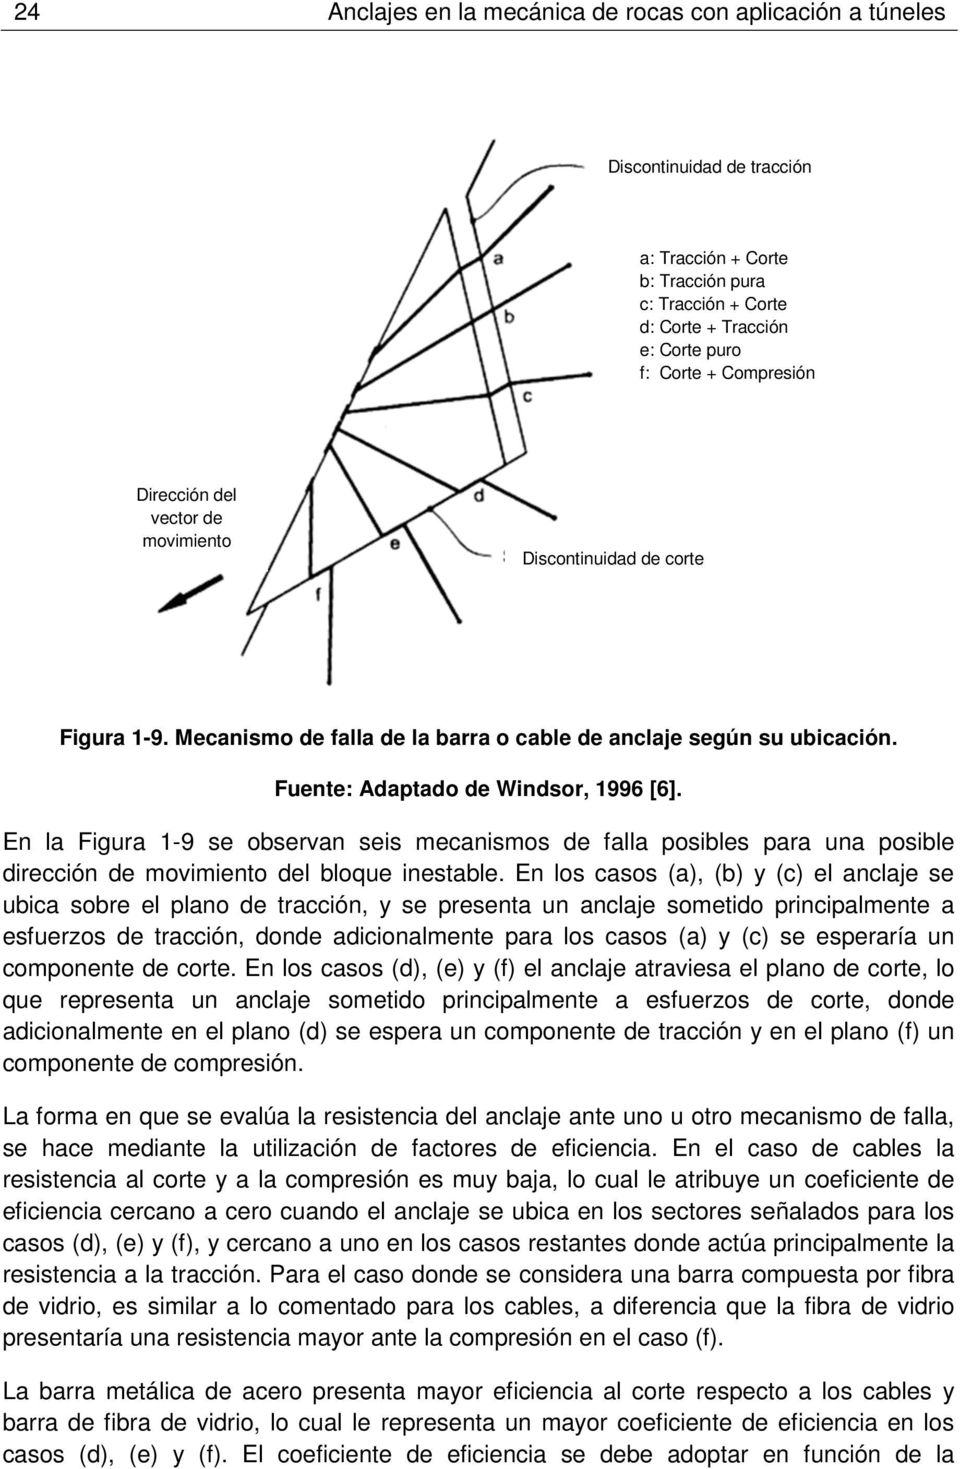 En la Figura 1-9 se observan seis mecanismos de falla posibles para una posible dirección de movimiento del bloque inestable.